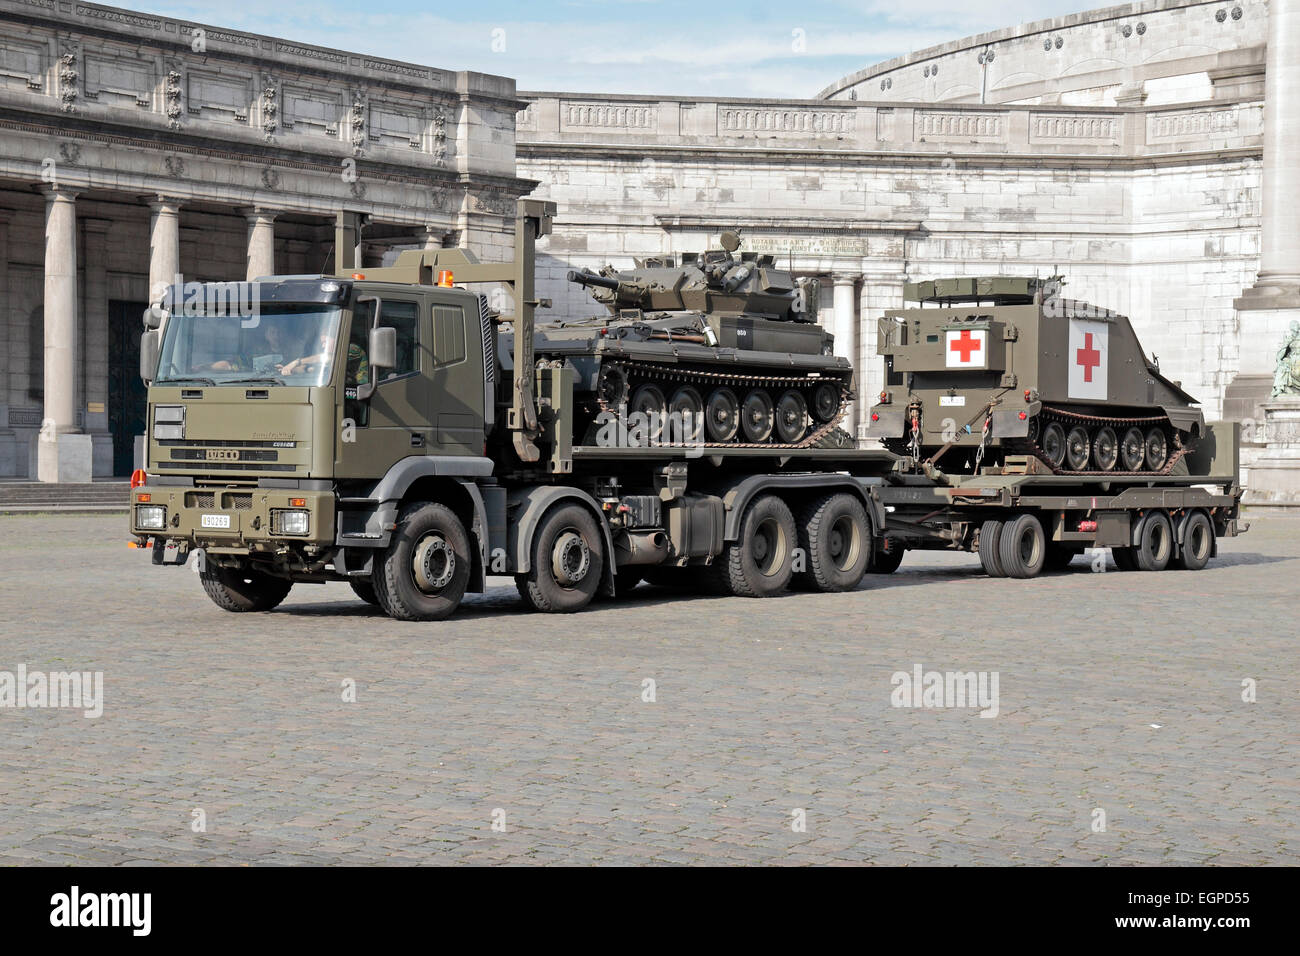 Ein IVECO Eurotrakker tank Transporter mit einem leichten Panzer (Alvis Skorpion?) und verfolgt medizinische Fahrzeug in Brüssel, Belgien. Stockfoto